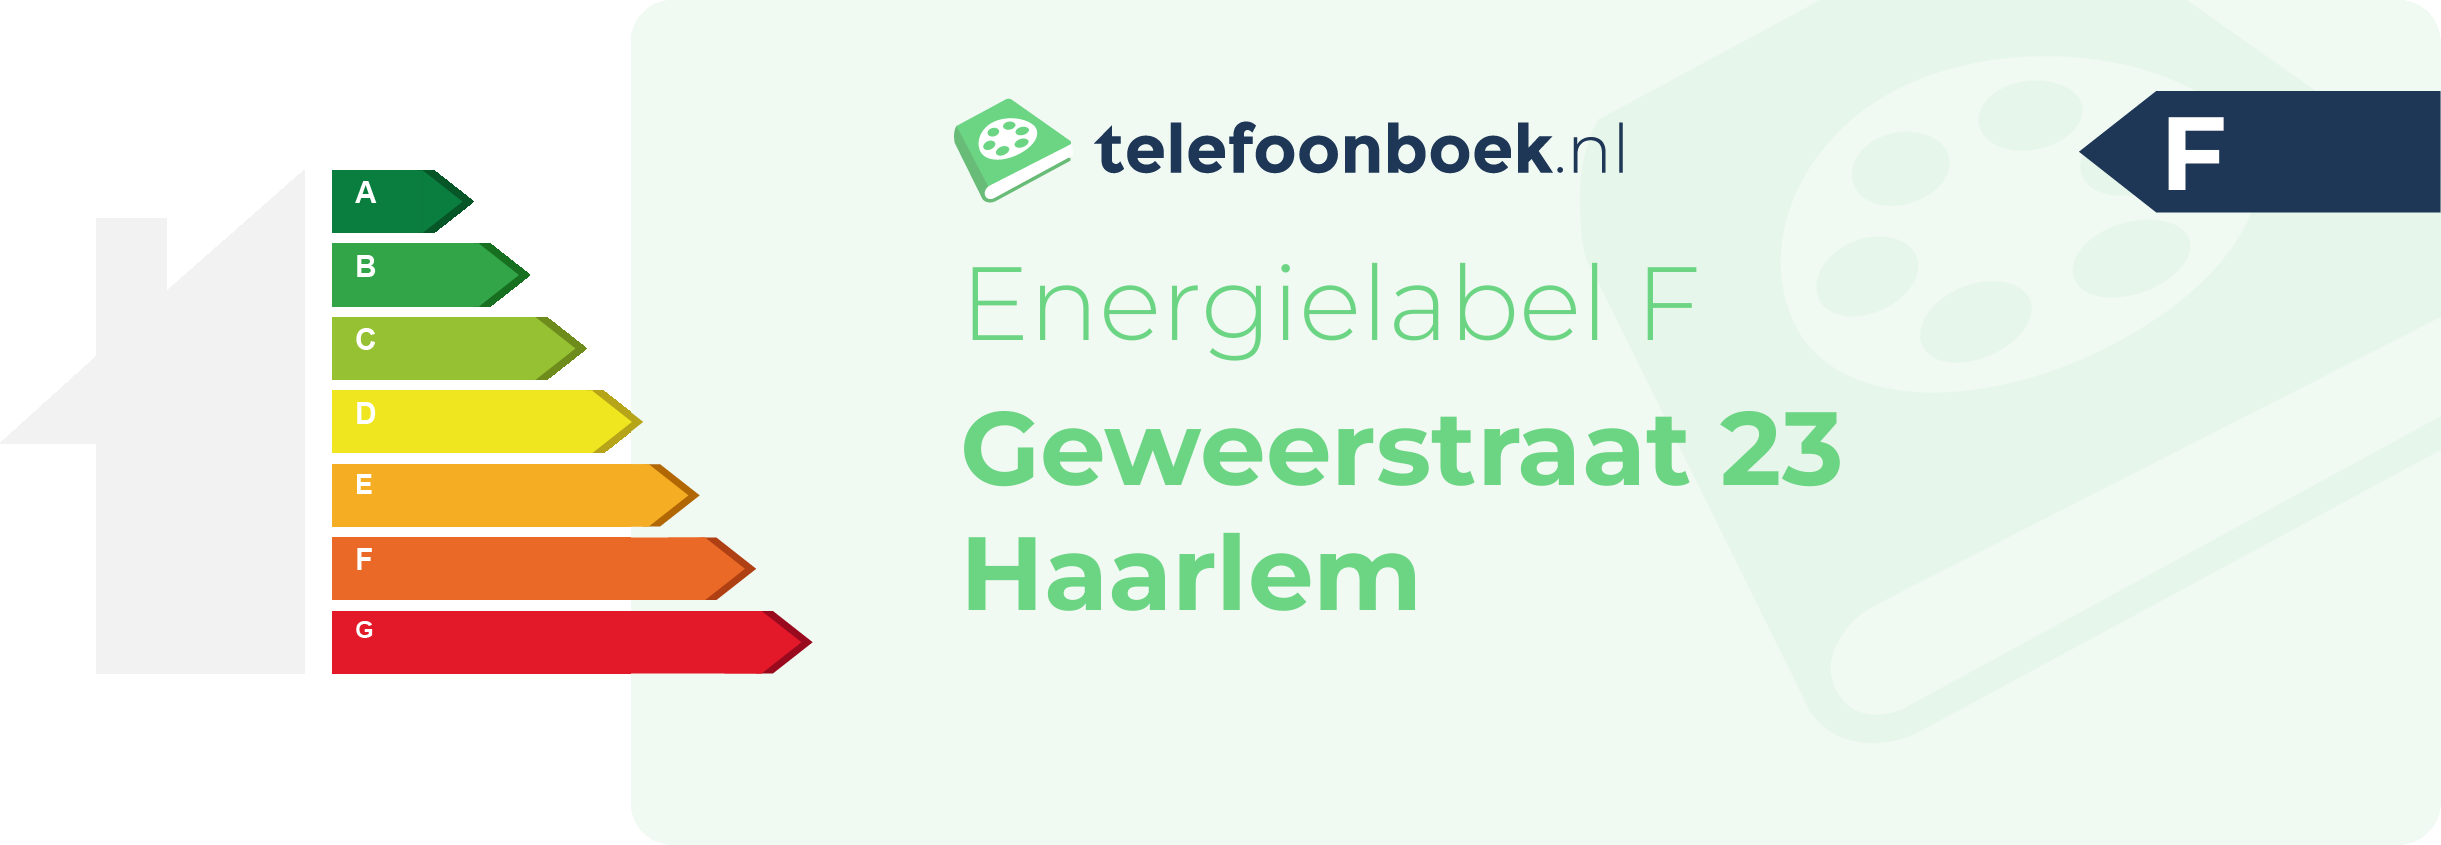 Energielabel Geweerstraat 23 Haarlem